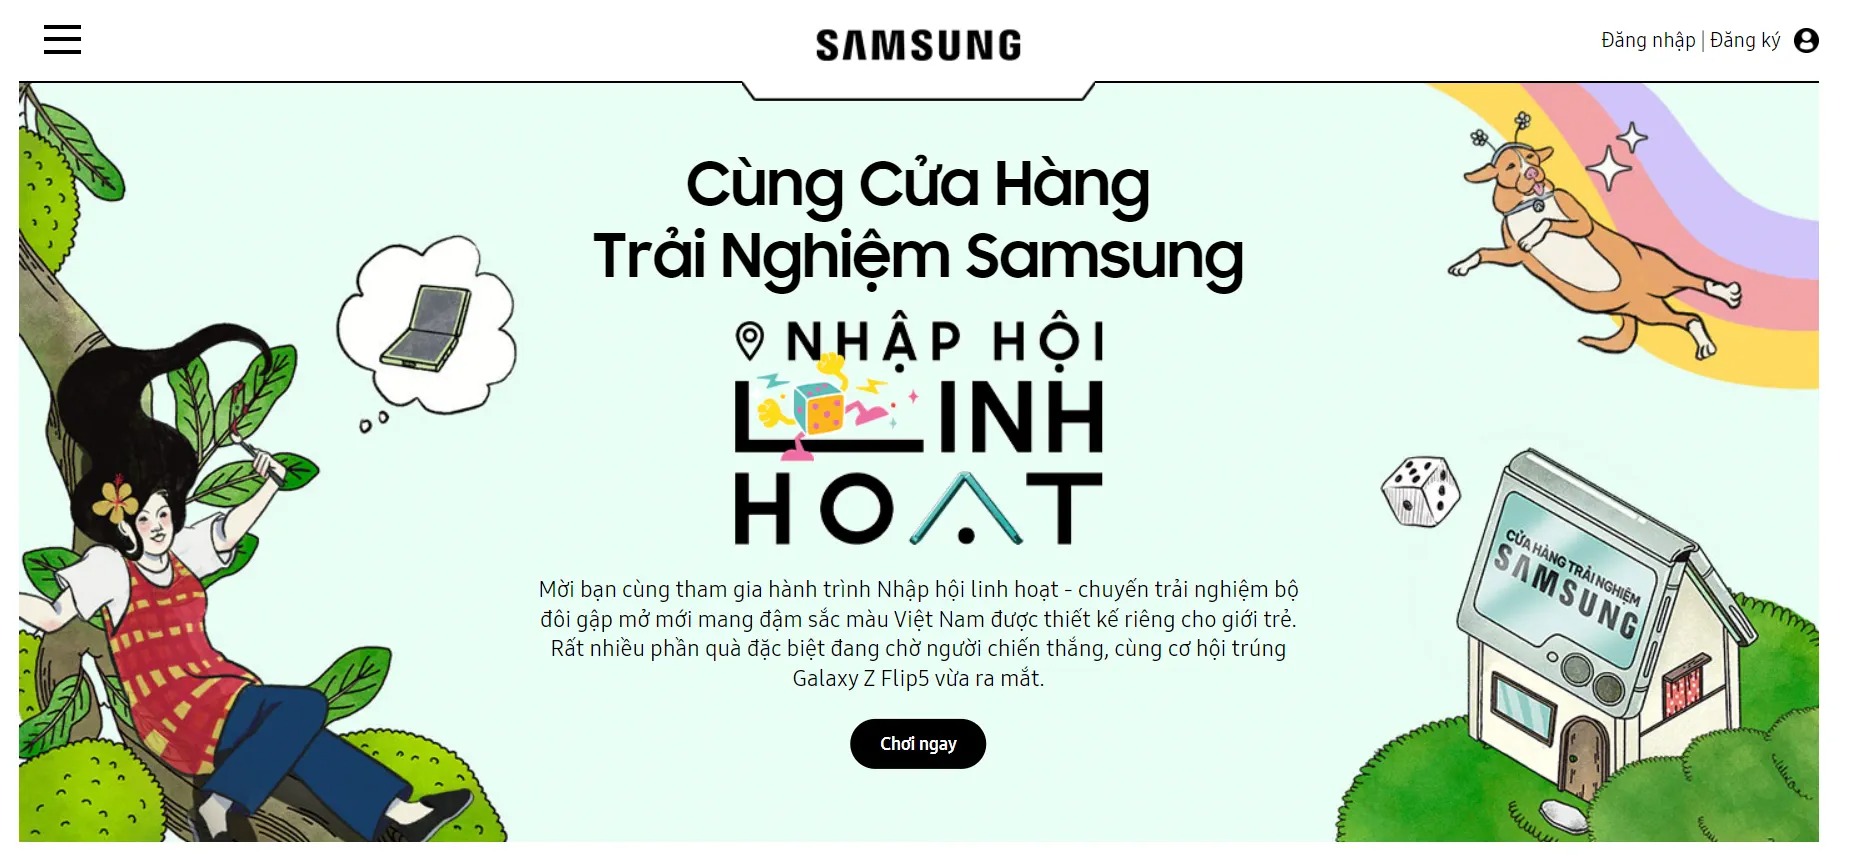 Hàng loạt Cửa hàng trải nghiệm Samsung vừa “thay áo mới”, nguyên do đằng sau là gì? - Ảnh 4.